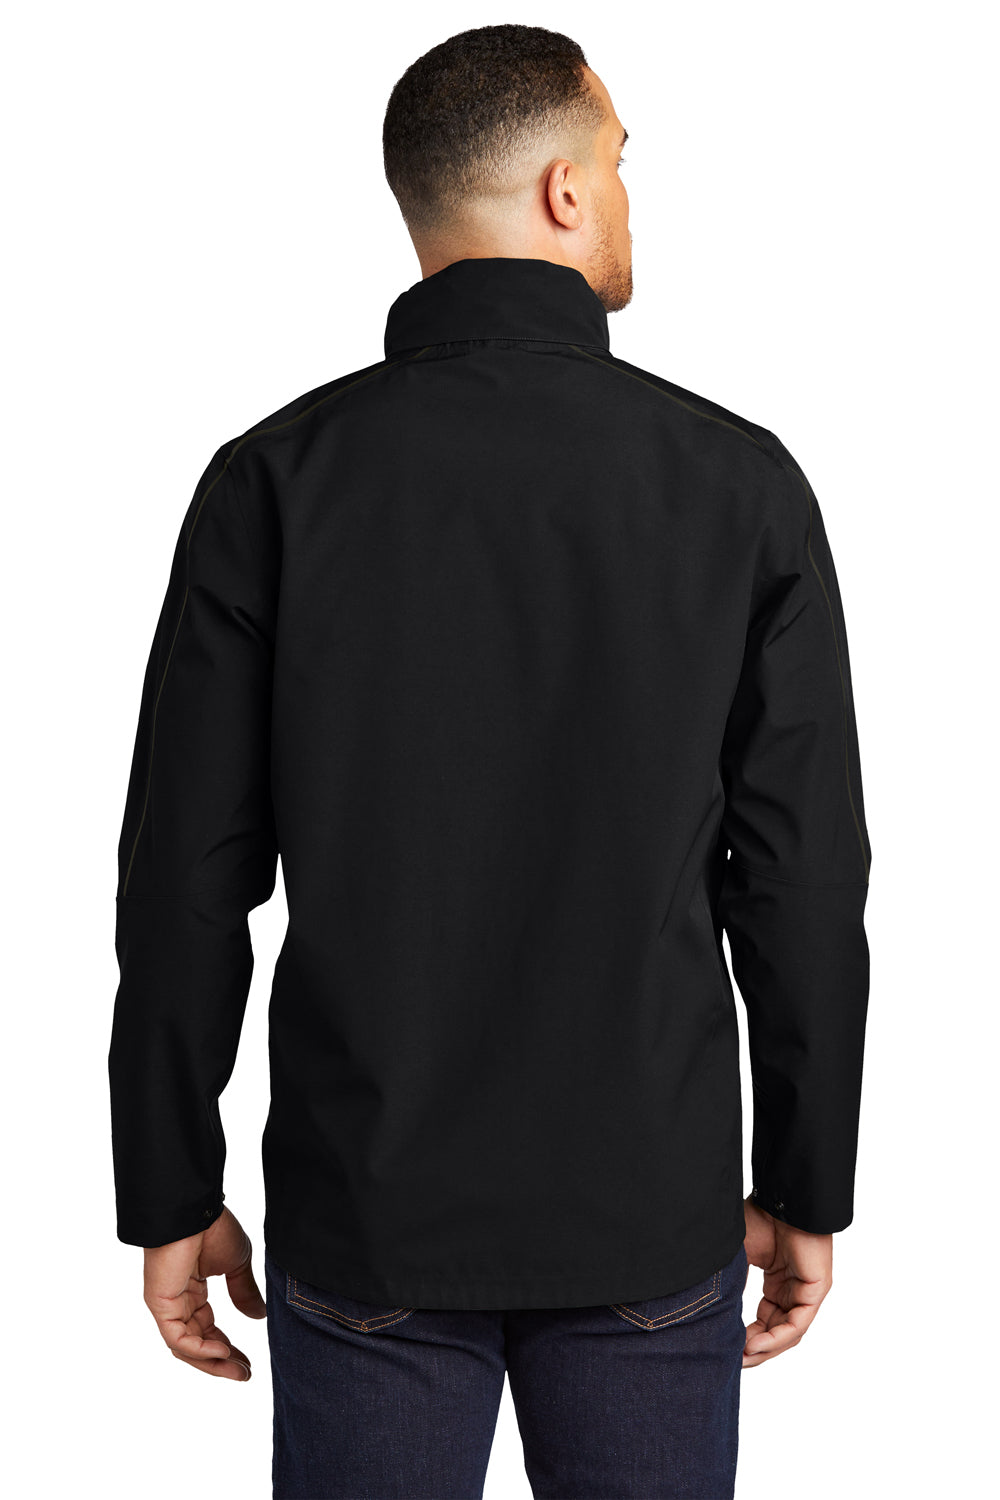 Ogio Mens Utilitarian Full Zip Hooded Jacket Blacktop Side